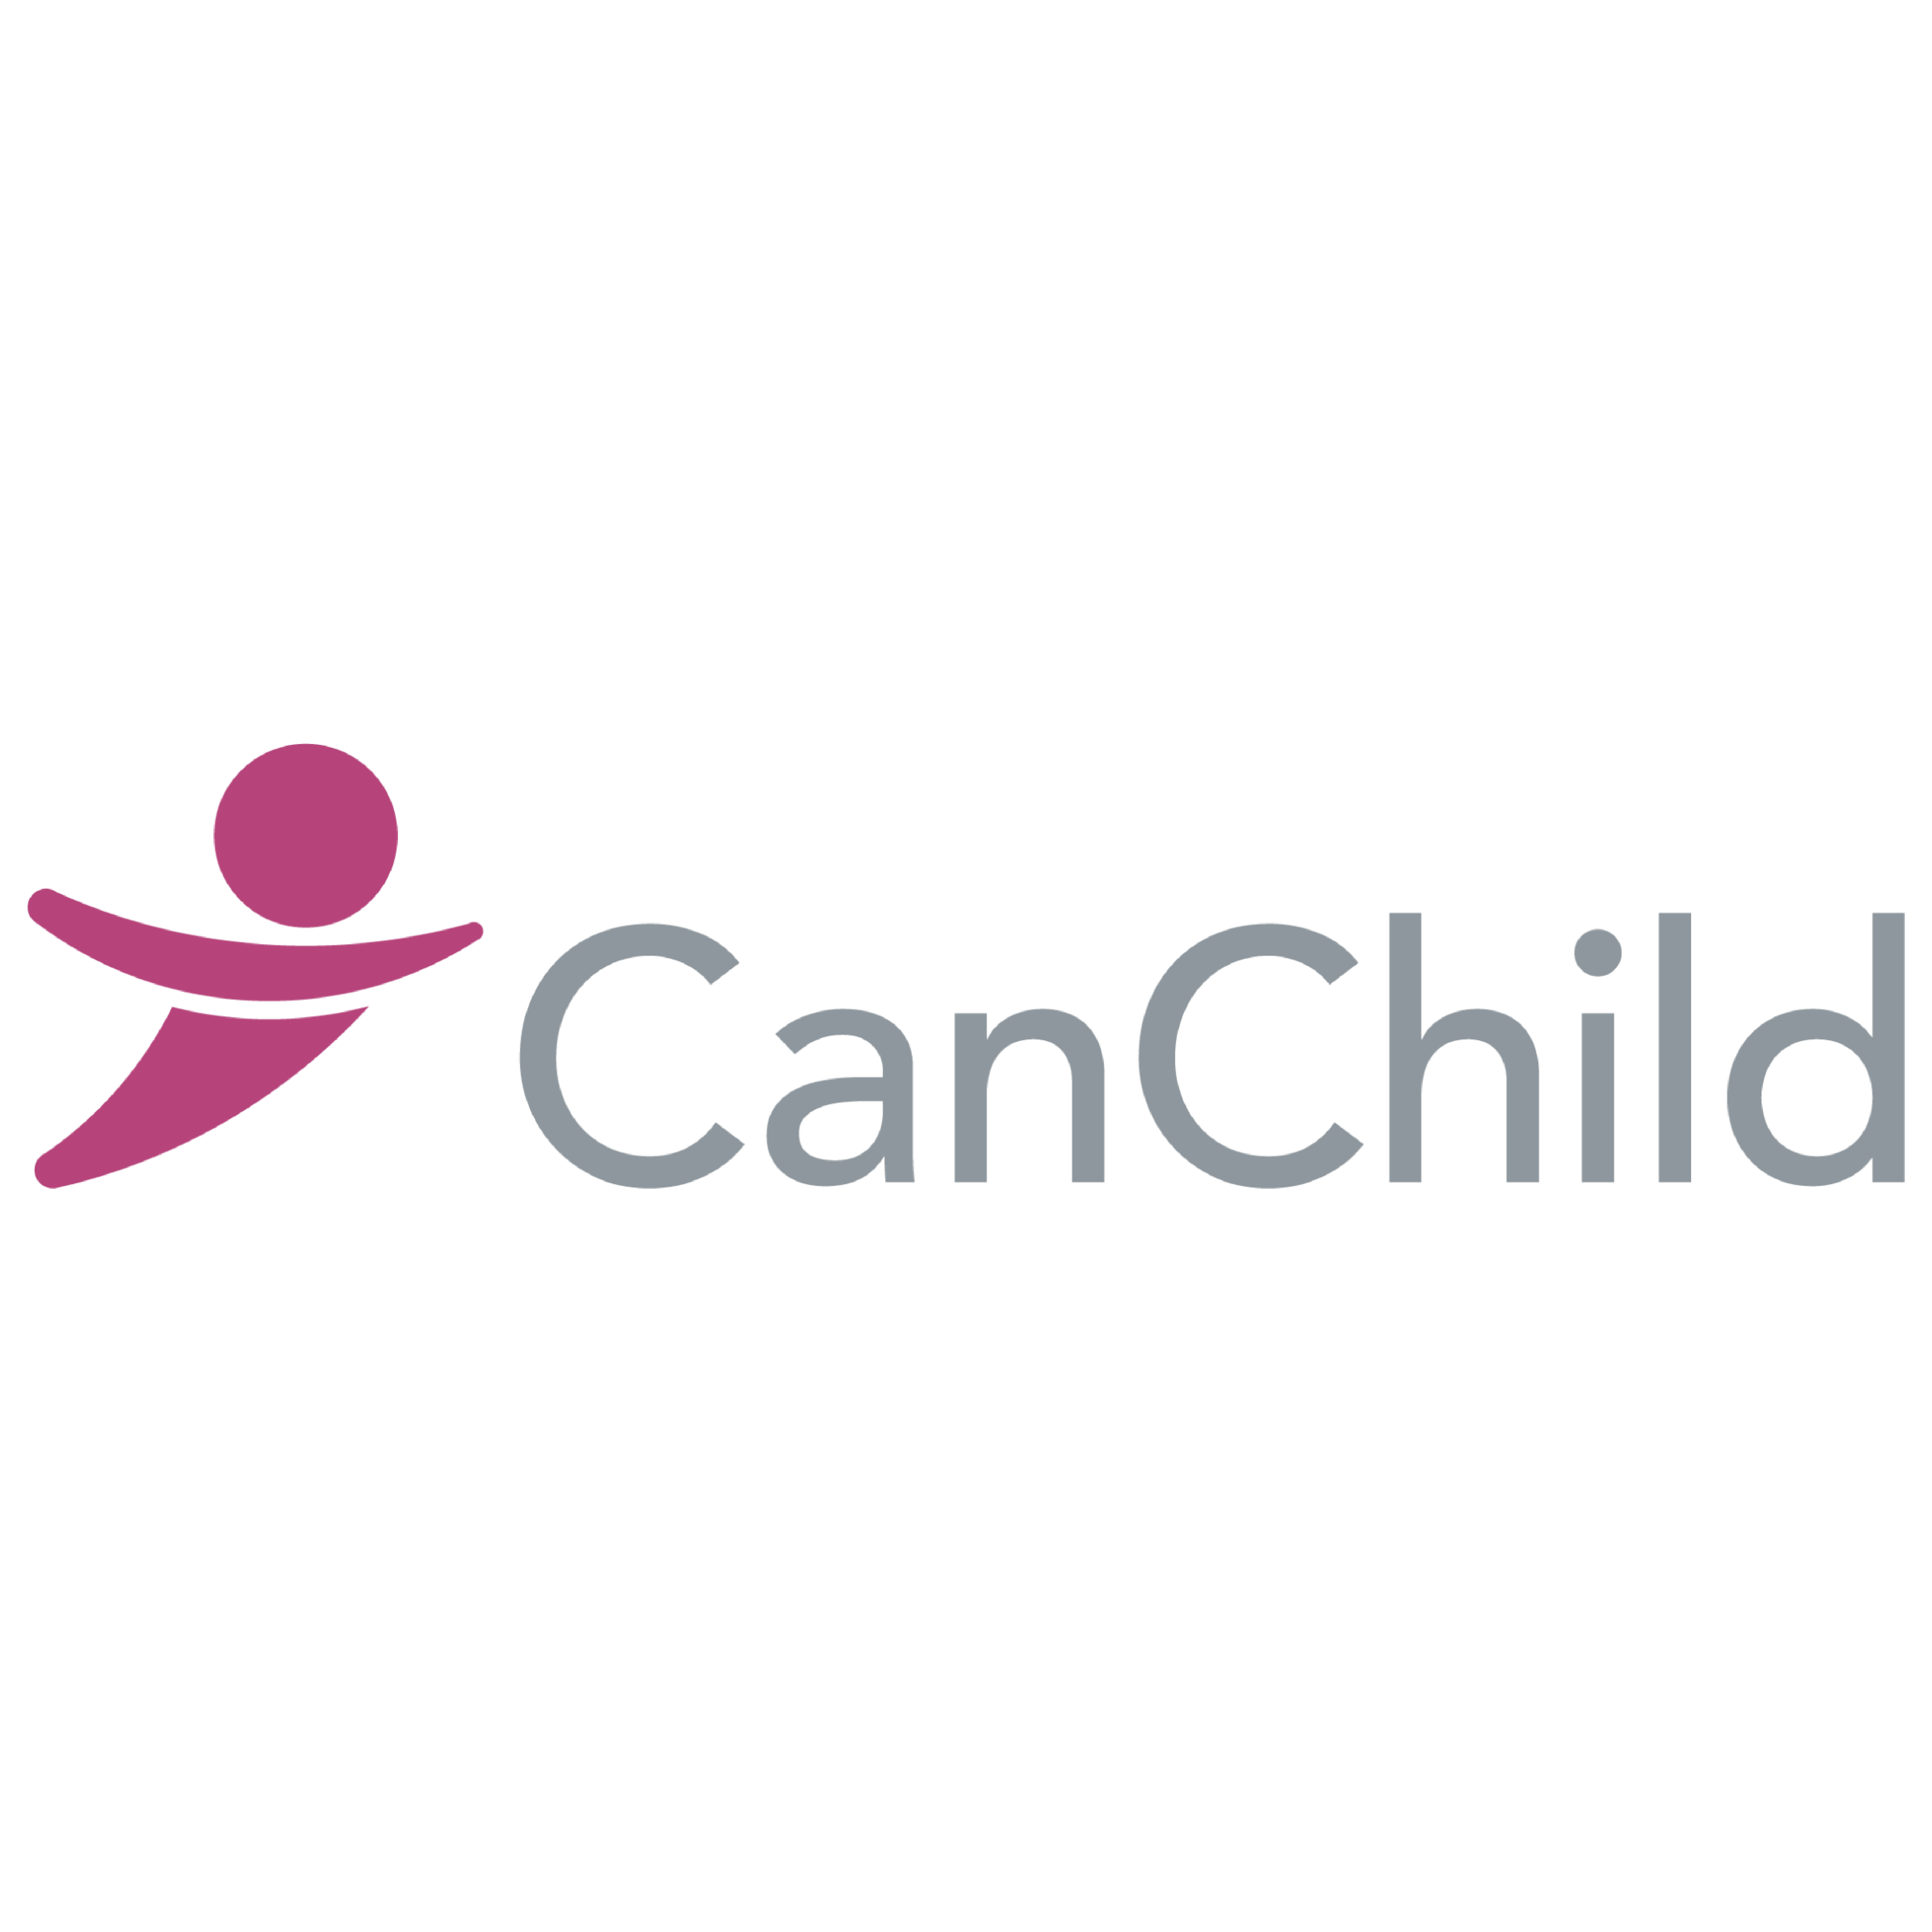 The CanChild logo.